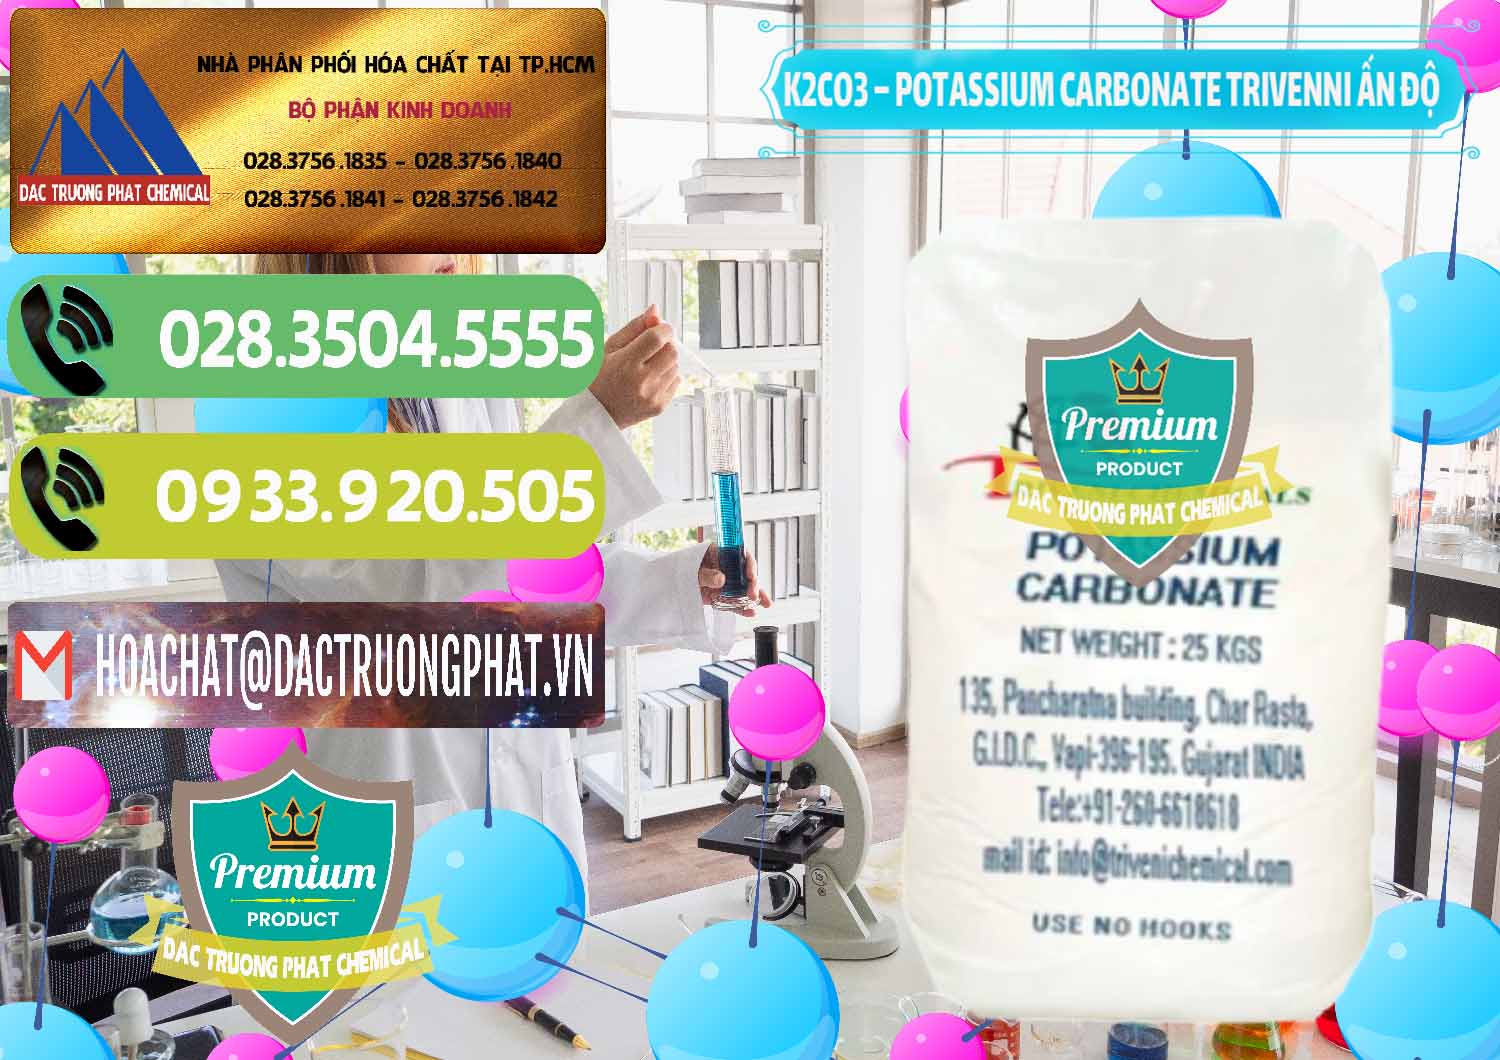 Cty nhập khẩu và bán K2Co3 – Potassium Carbonate Trivenni Ấn Độ India - 0473 - Công ty phân phối và nhập khẩu hóa chất tại TP.HCM - hoachatmientay.vn